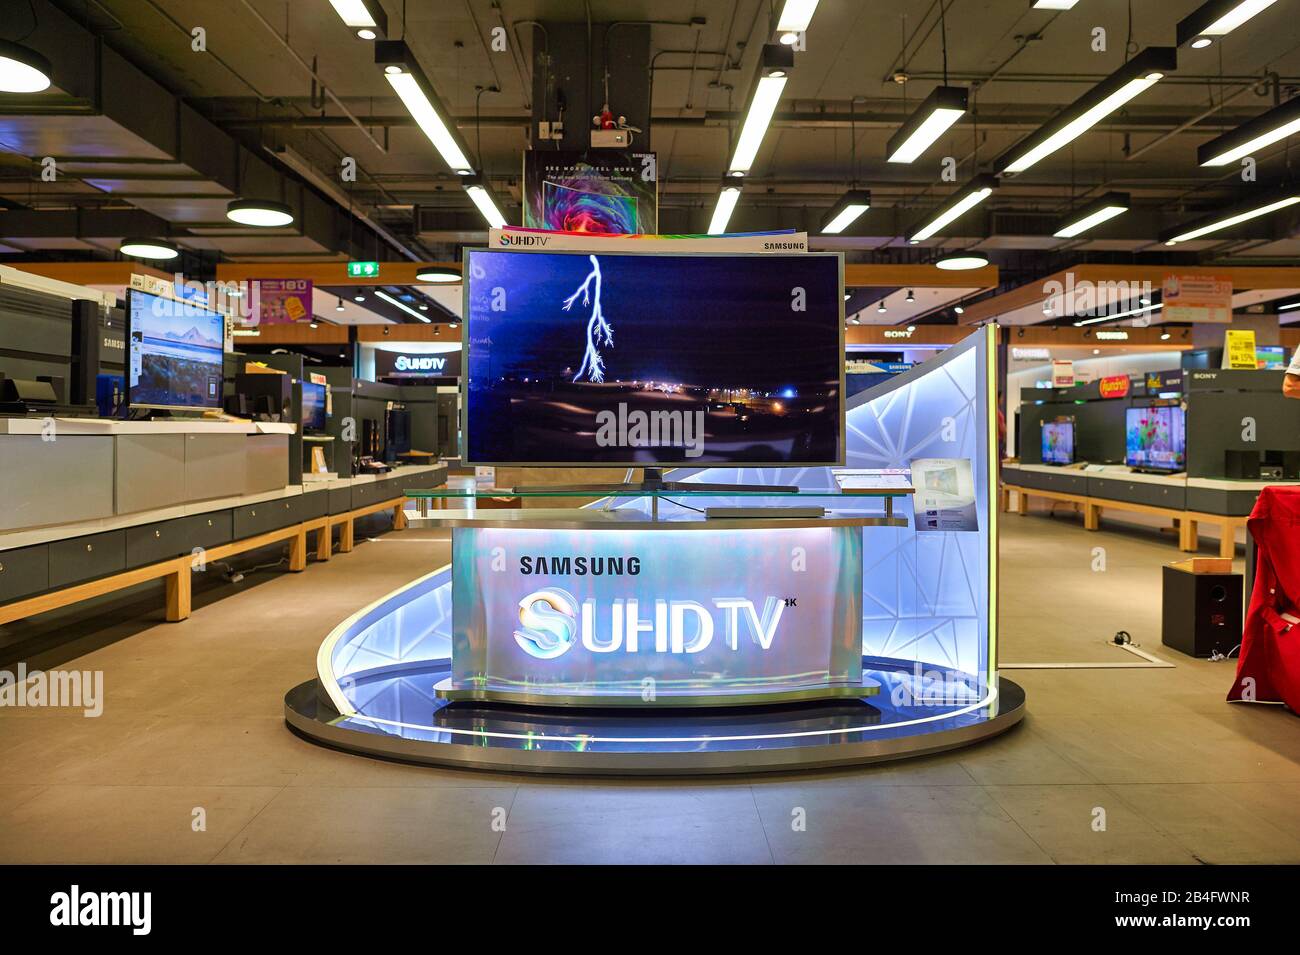 BANGKOK, THAILAND - CIRCA JUNE, 2015: Samsung Television on display at a shopping center in Bangkok. Stock Photo